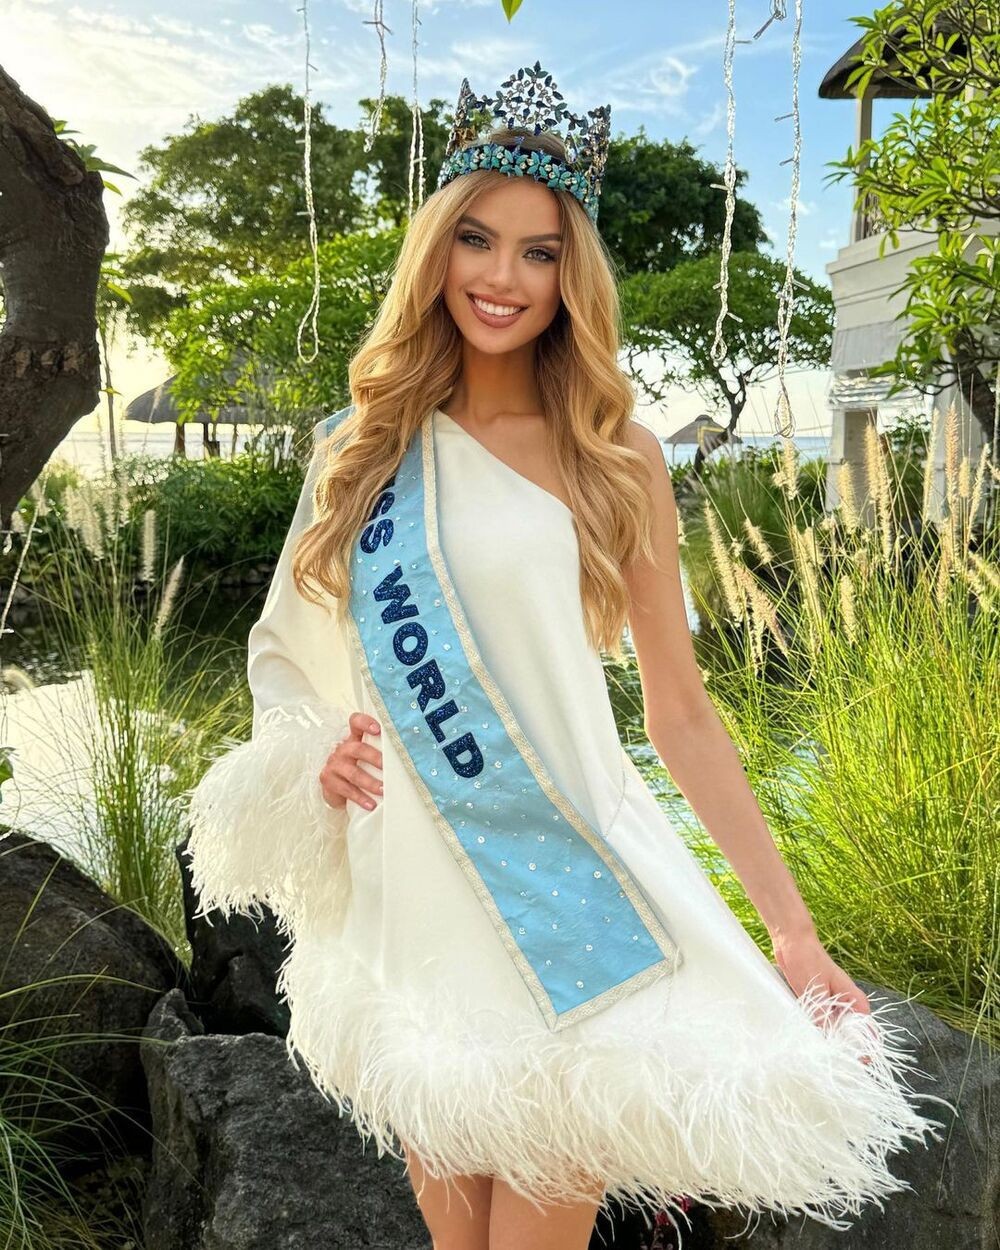 Đăng quang Miss World 2023, người đẹp Krystyna Pyszková gây chú ý với nhan sắc ngọt ngào, sắc sảo cùng phong cách thời trang quyến rũ và thời thượng như minh tinh điện ảnh.